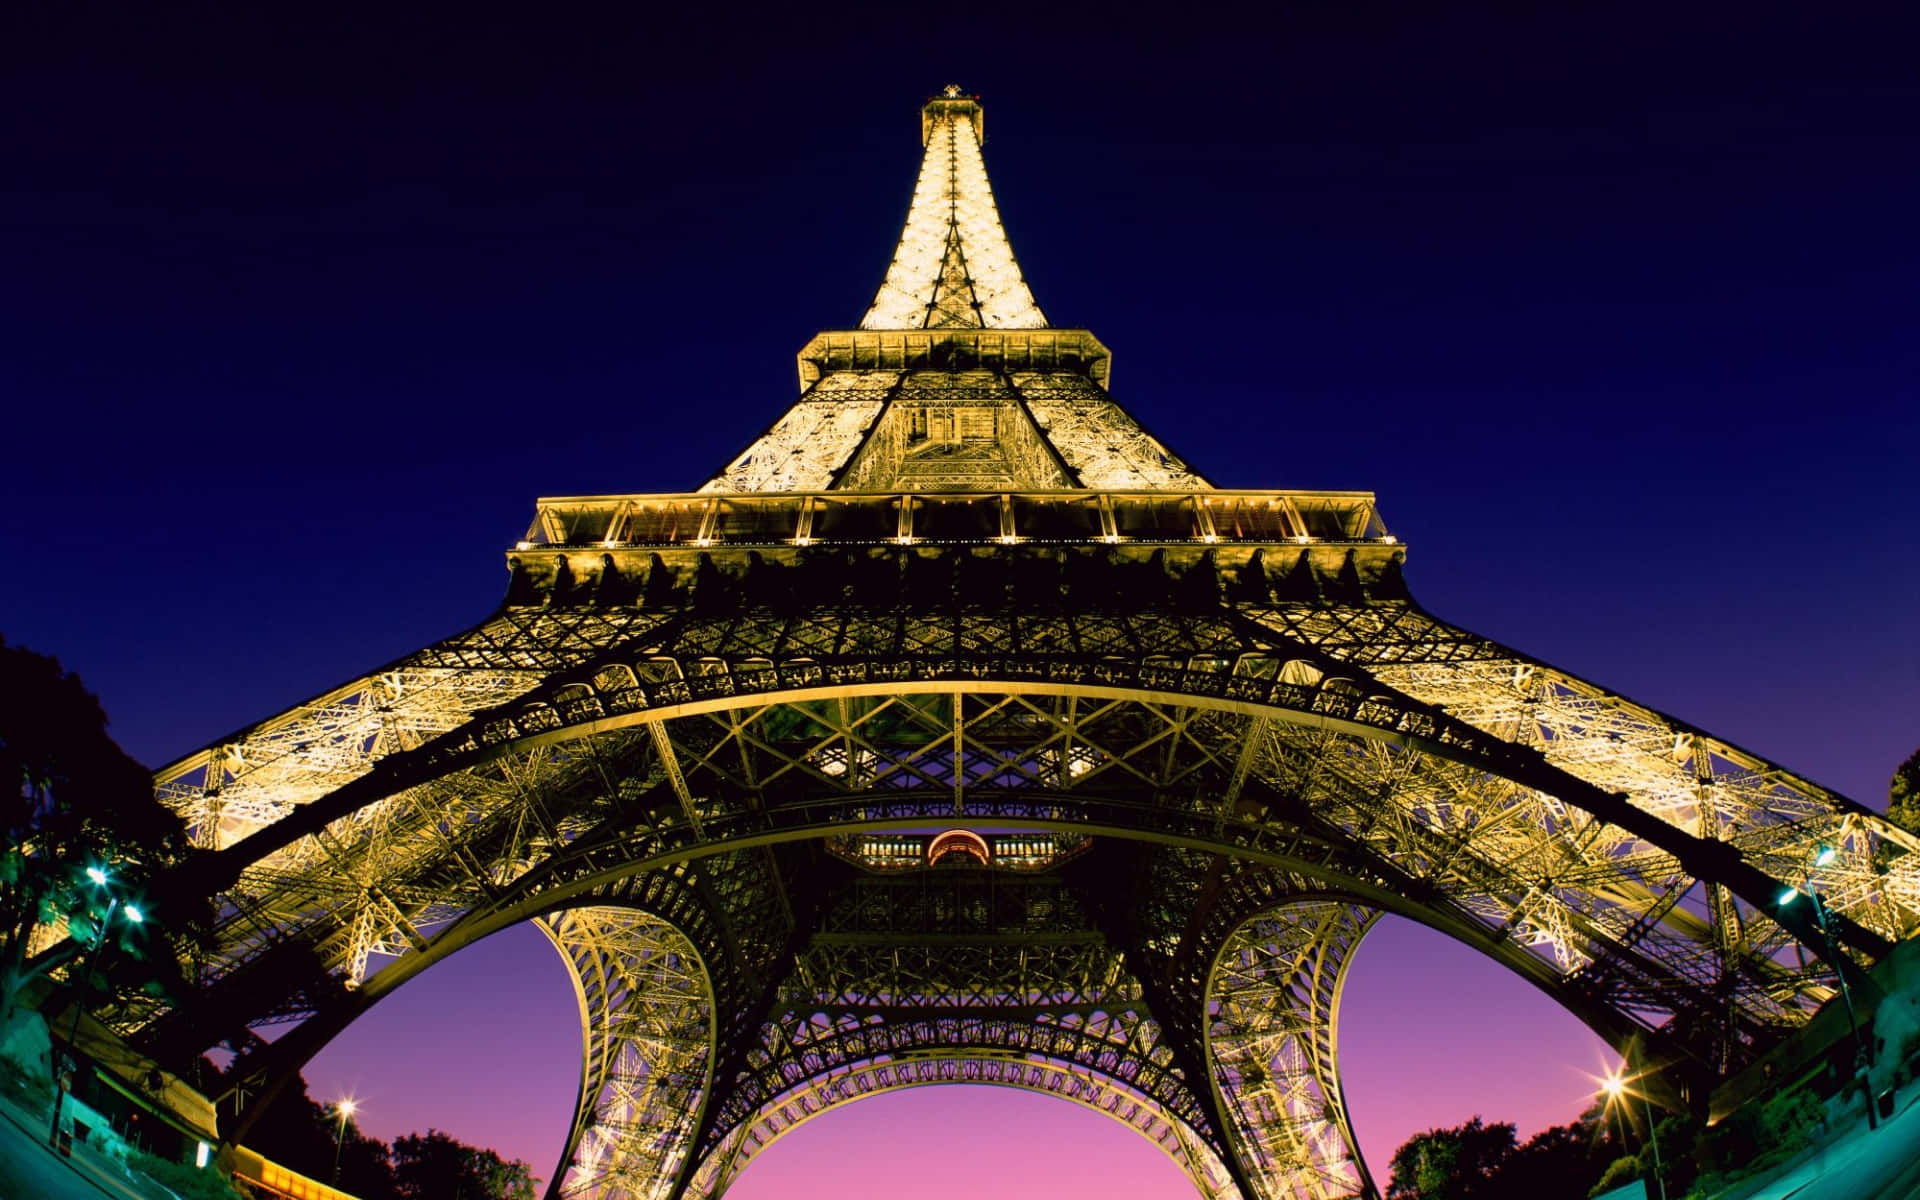 Njutav De Romantiska Ljusen I Paris På Natten På Din Datorskärm Eller Mobilbakgrundsbild. Wallpaper